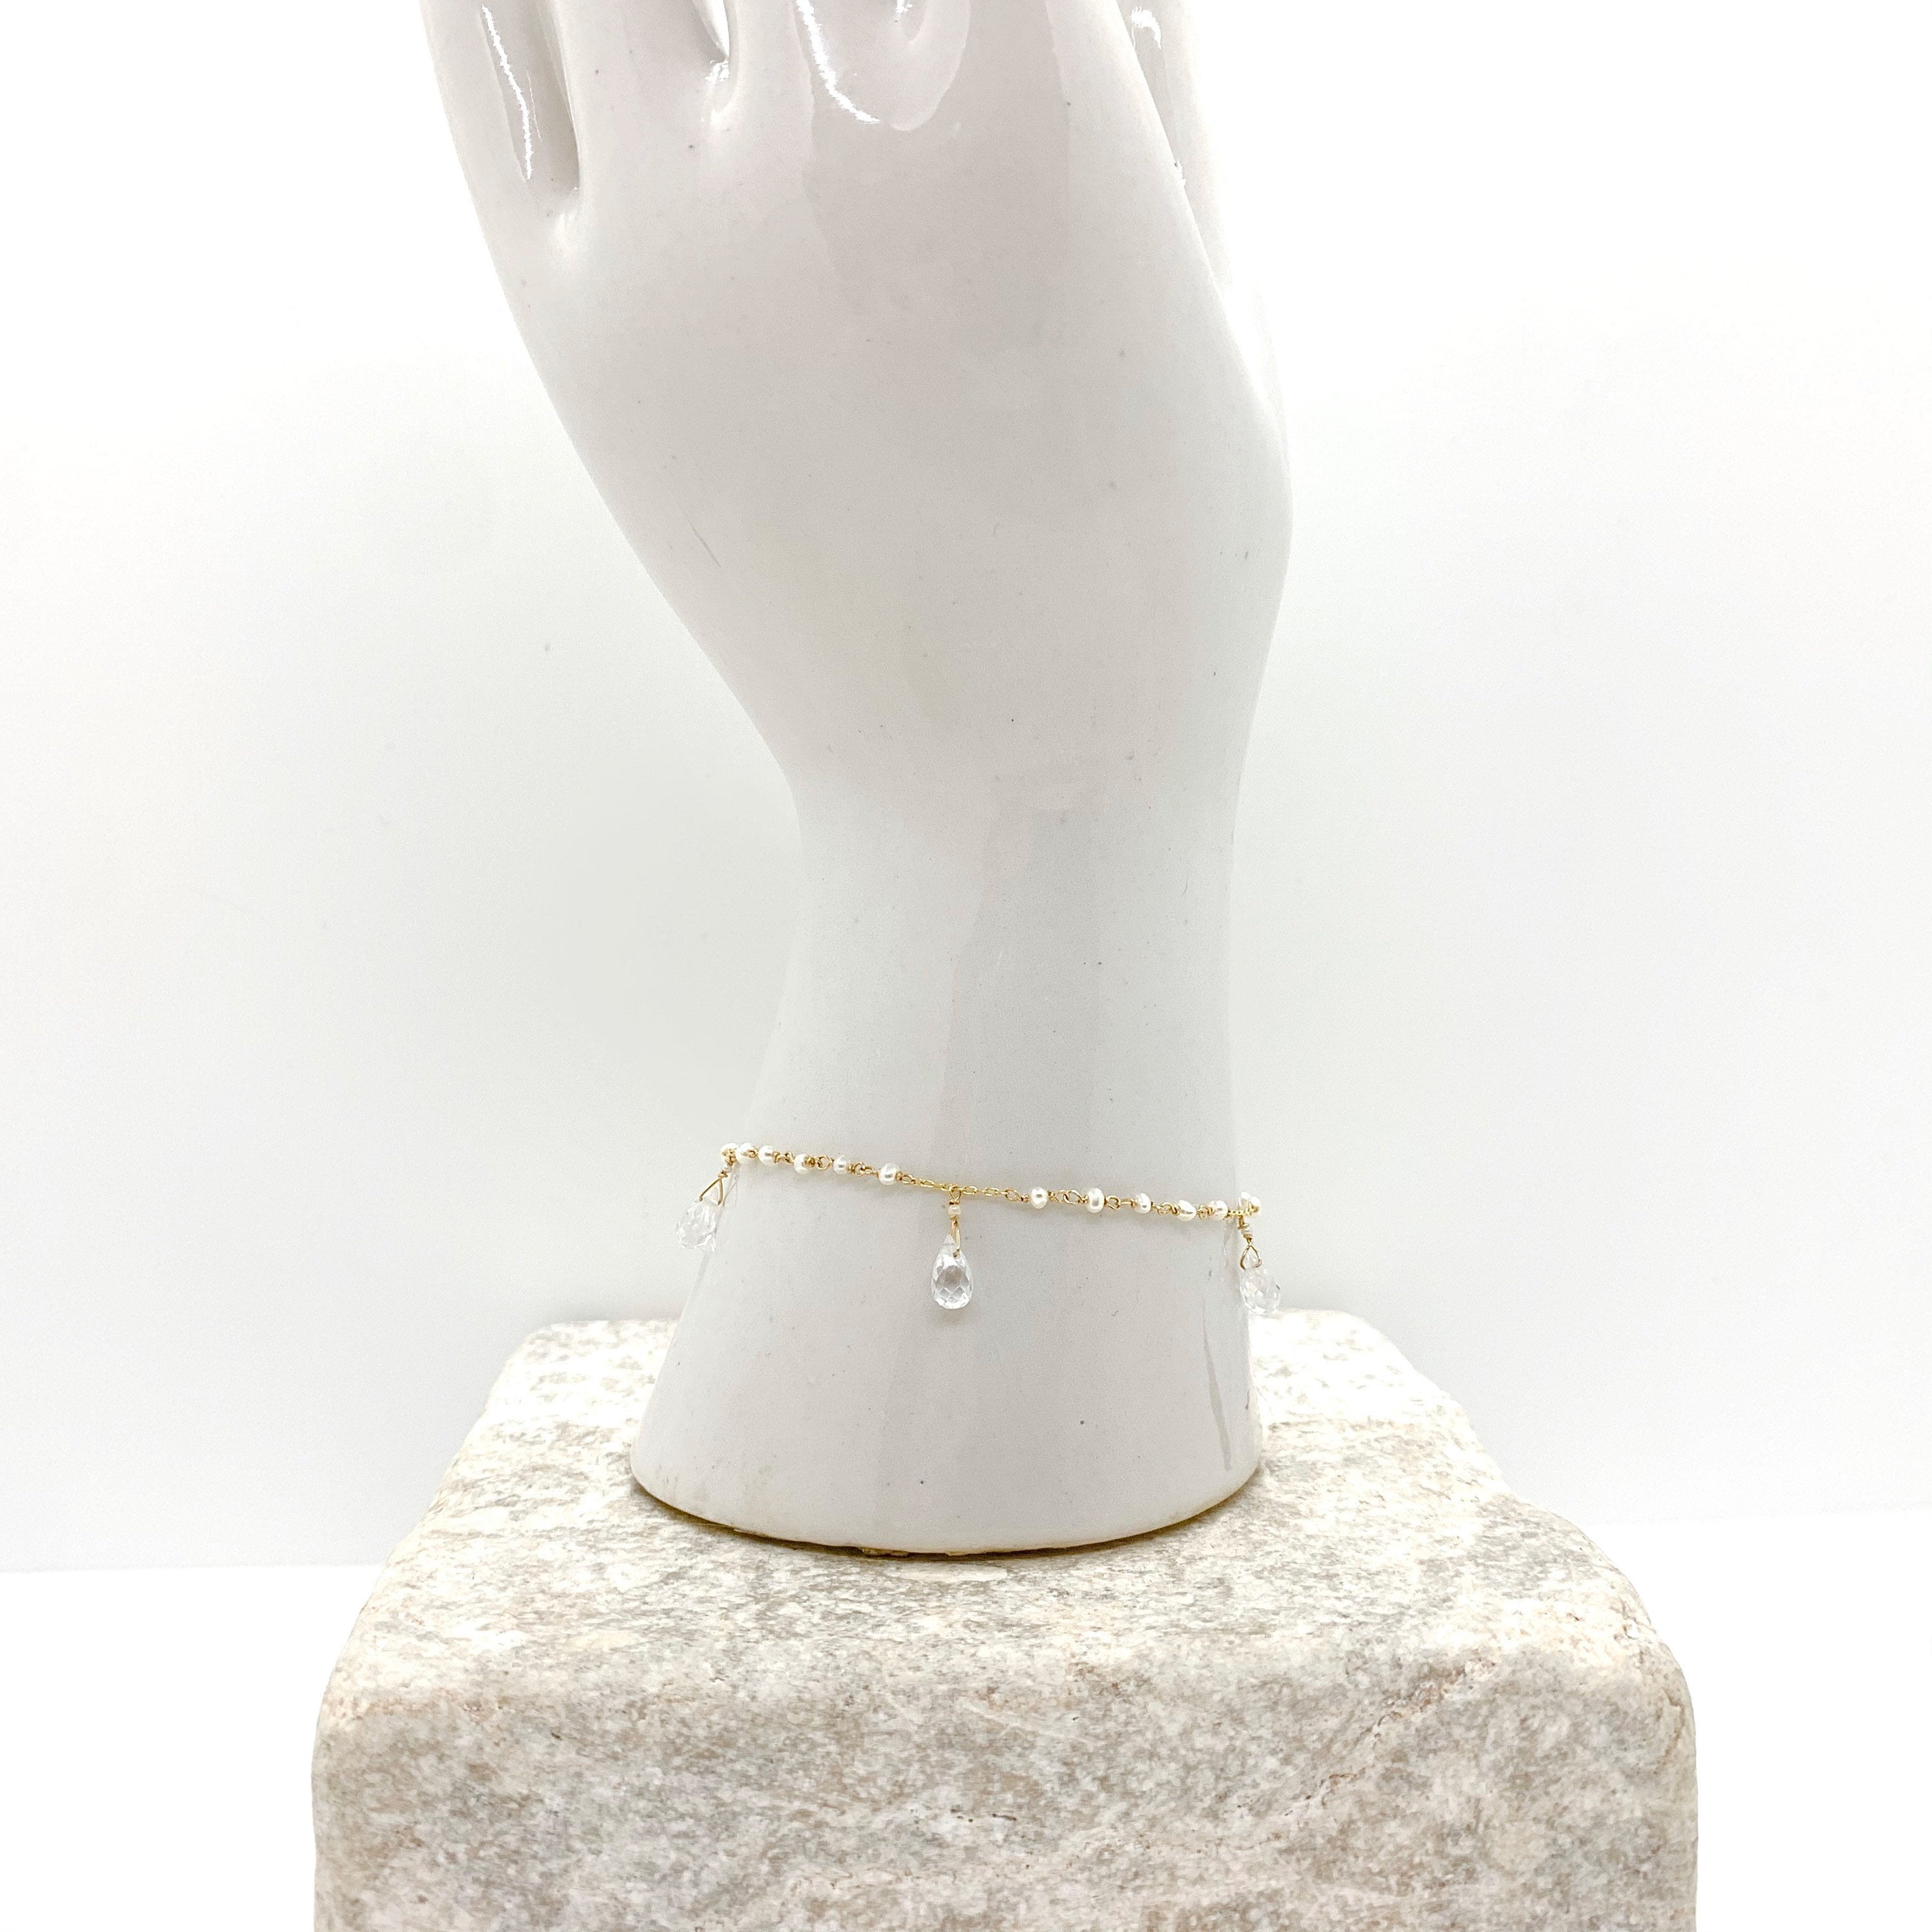 14K GOLD BRACELET - Moonstone Bracelet - Yellow Gold Bracelet - Freshwater Pearls - Gold Chain Bracelet